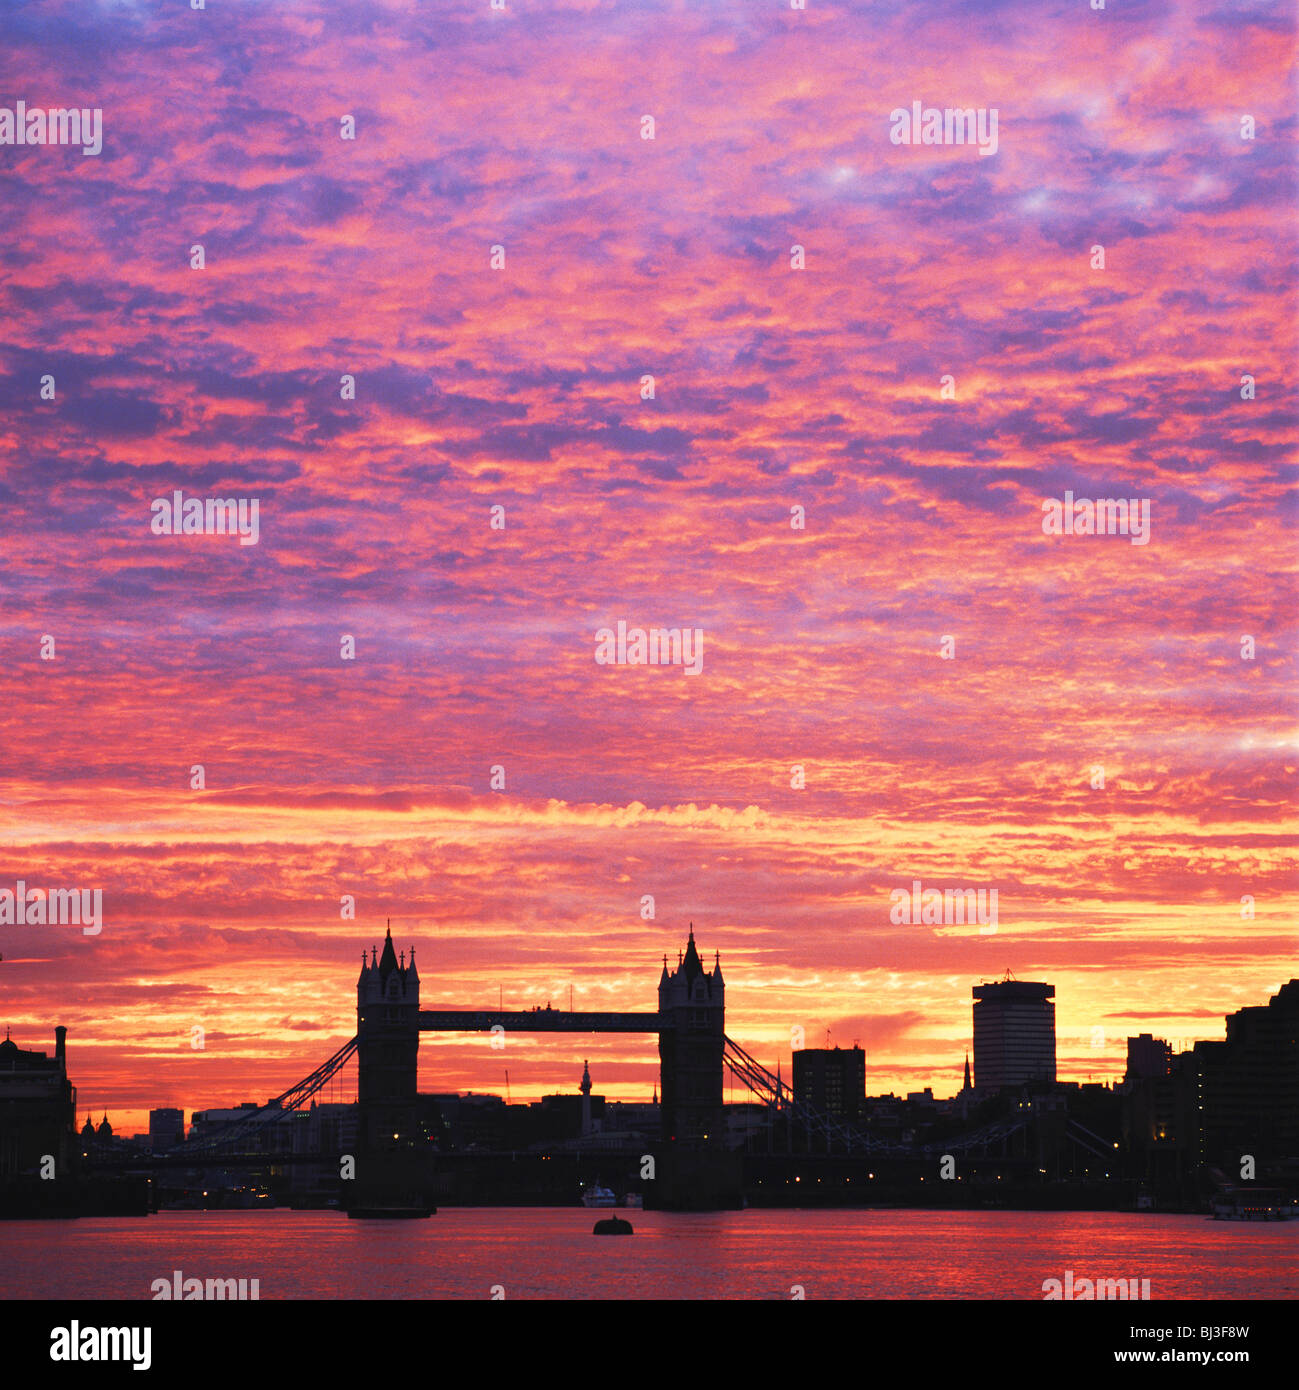 Londres, spectaculaire coucher de soleil sur le Tower Bridge et la Tamise, England, UK, FR. Ville de Londres. Banque D'Images